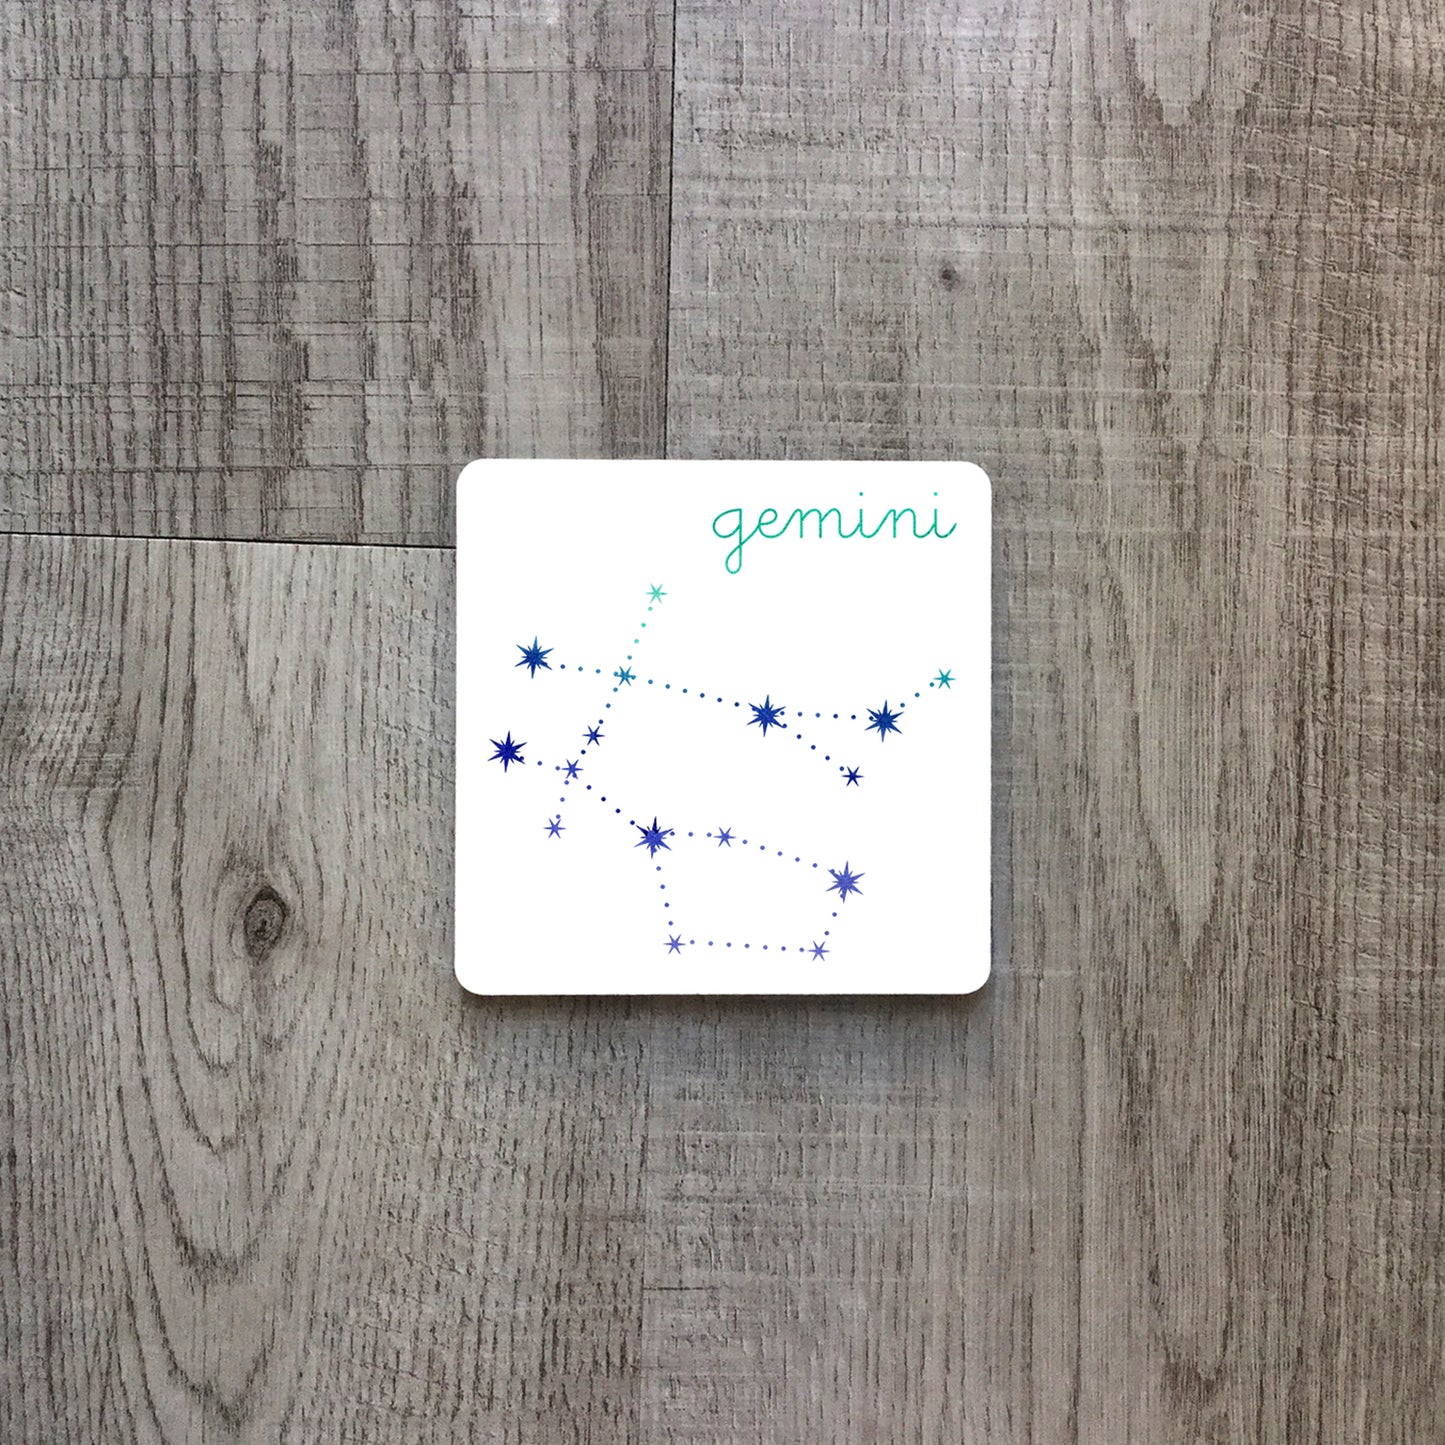 Gemini constellation | Ceramic mug